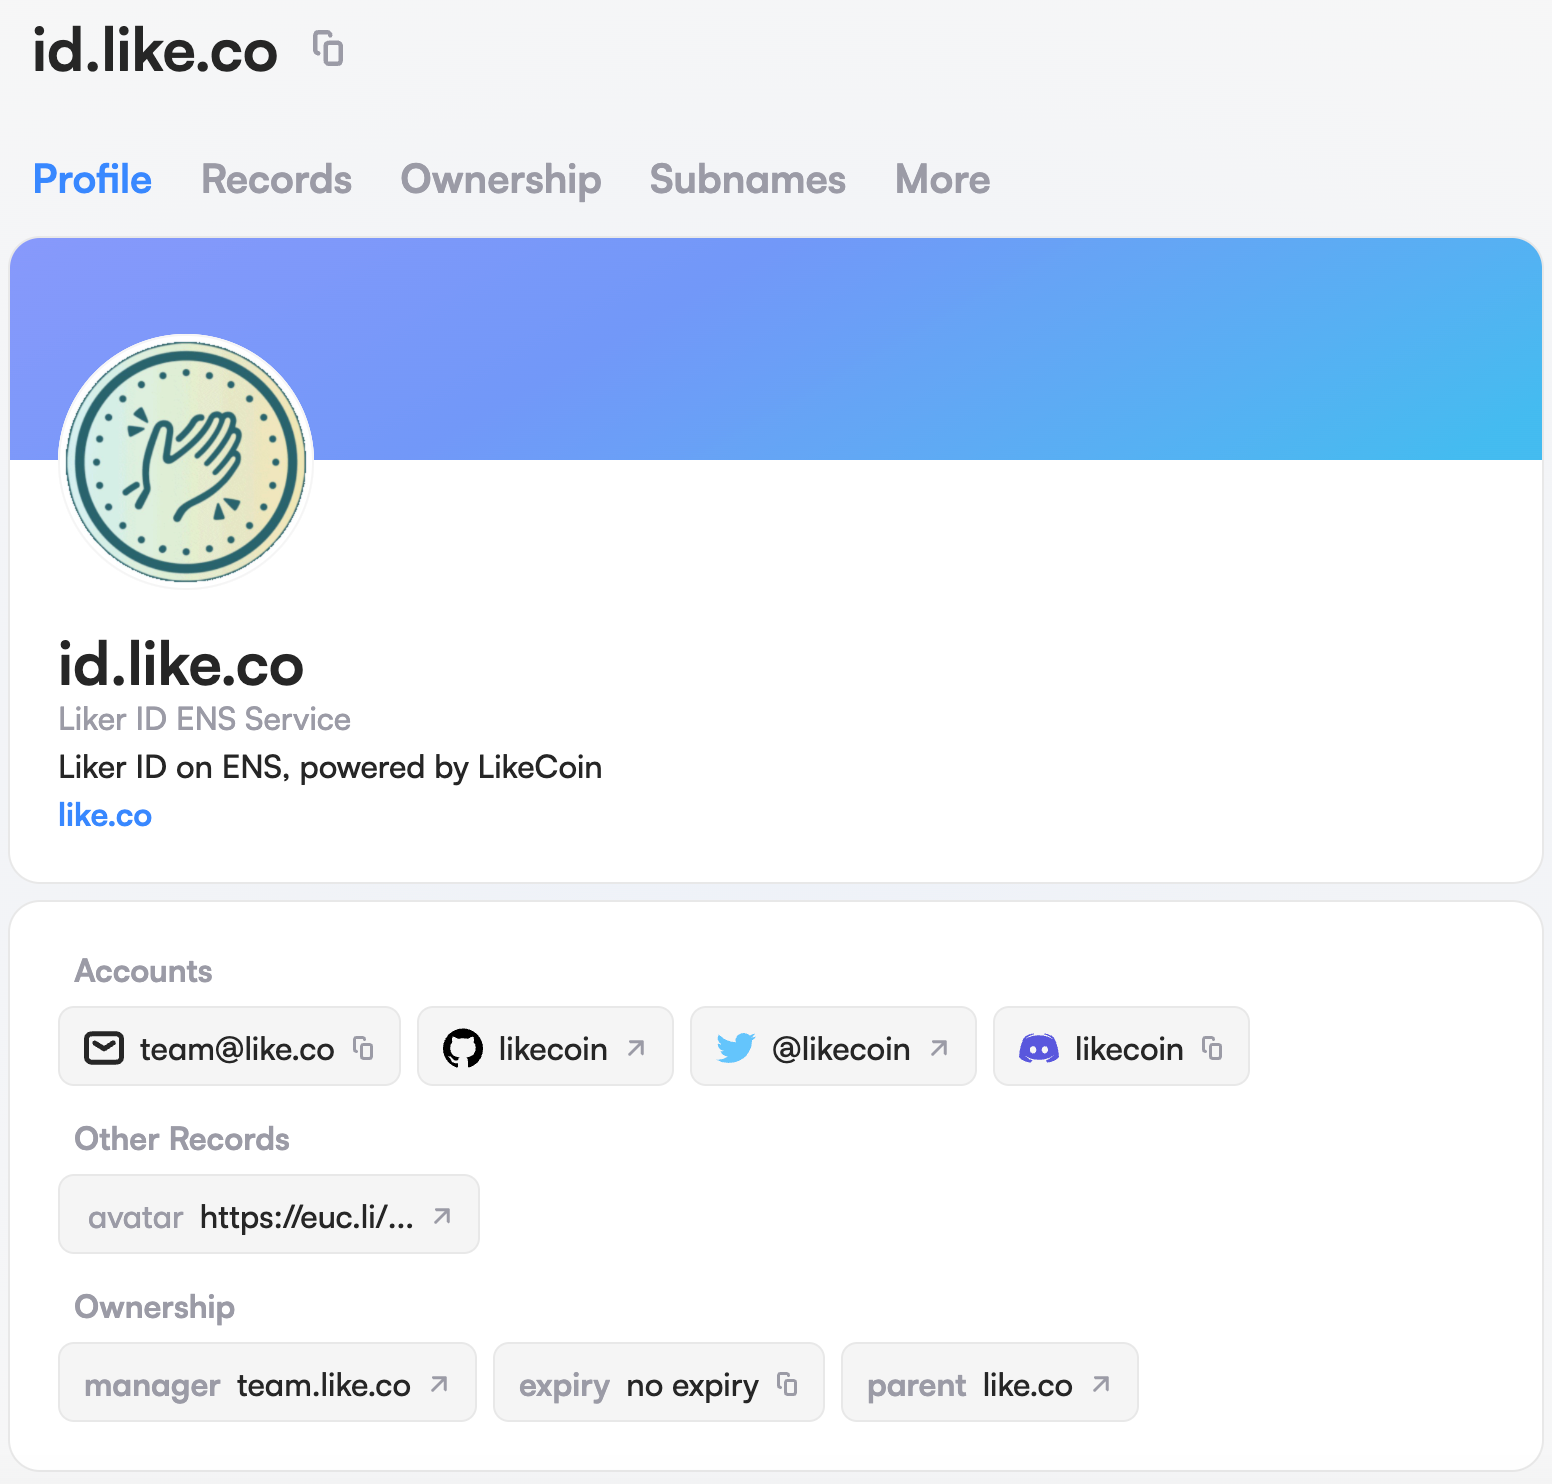 Meet id.like.co — Liker ID on ENS